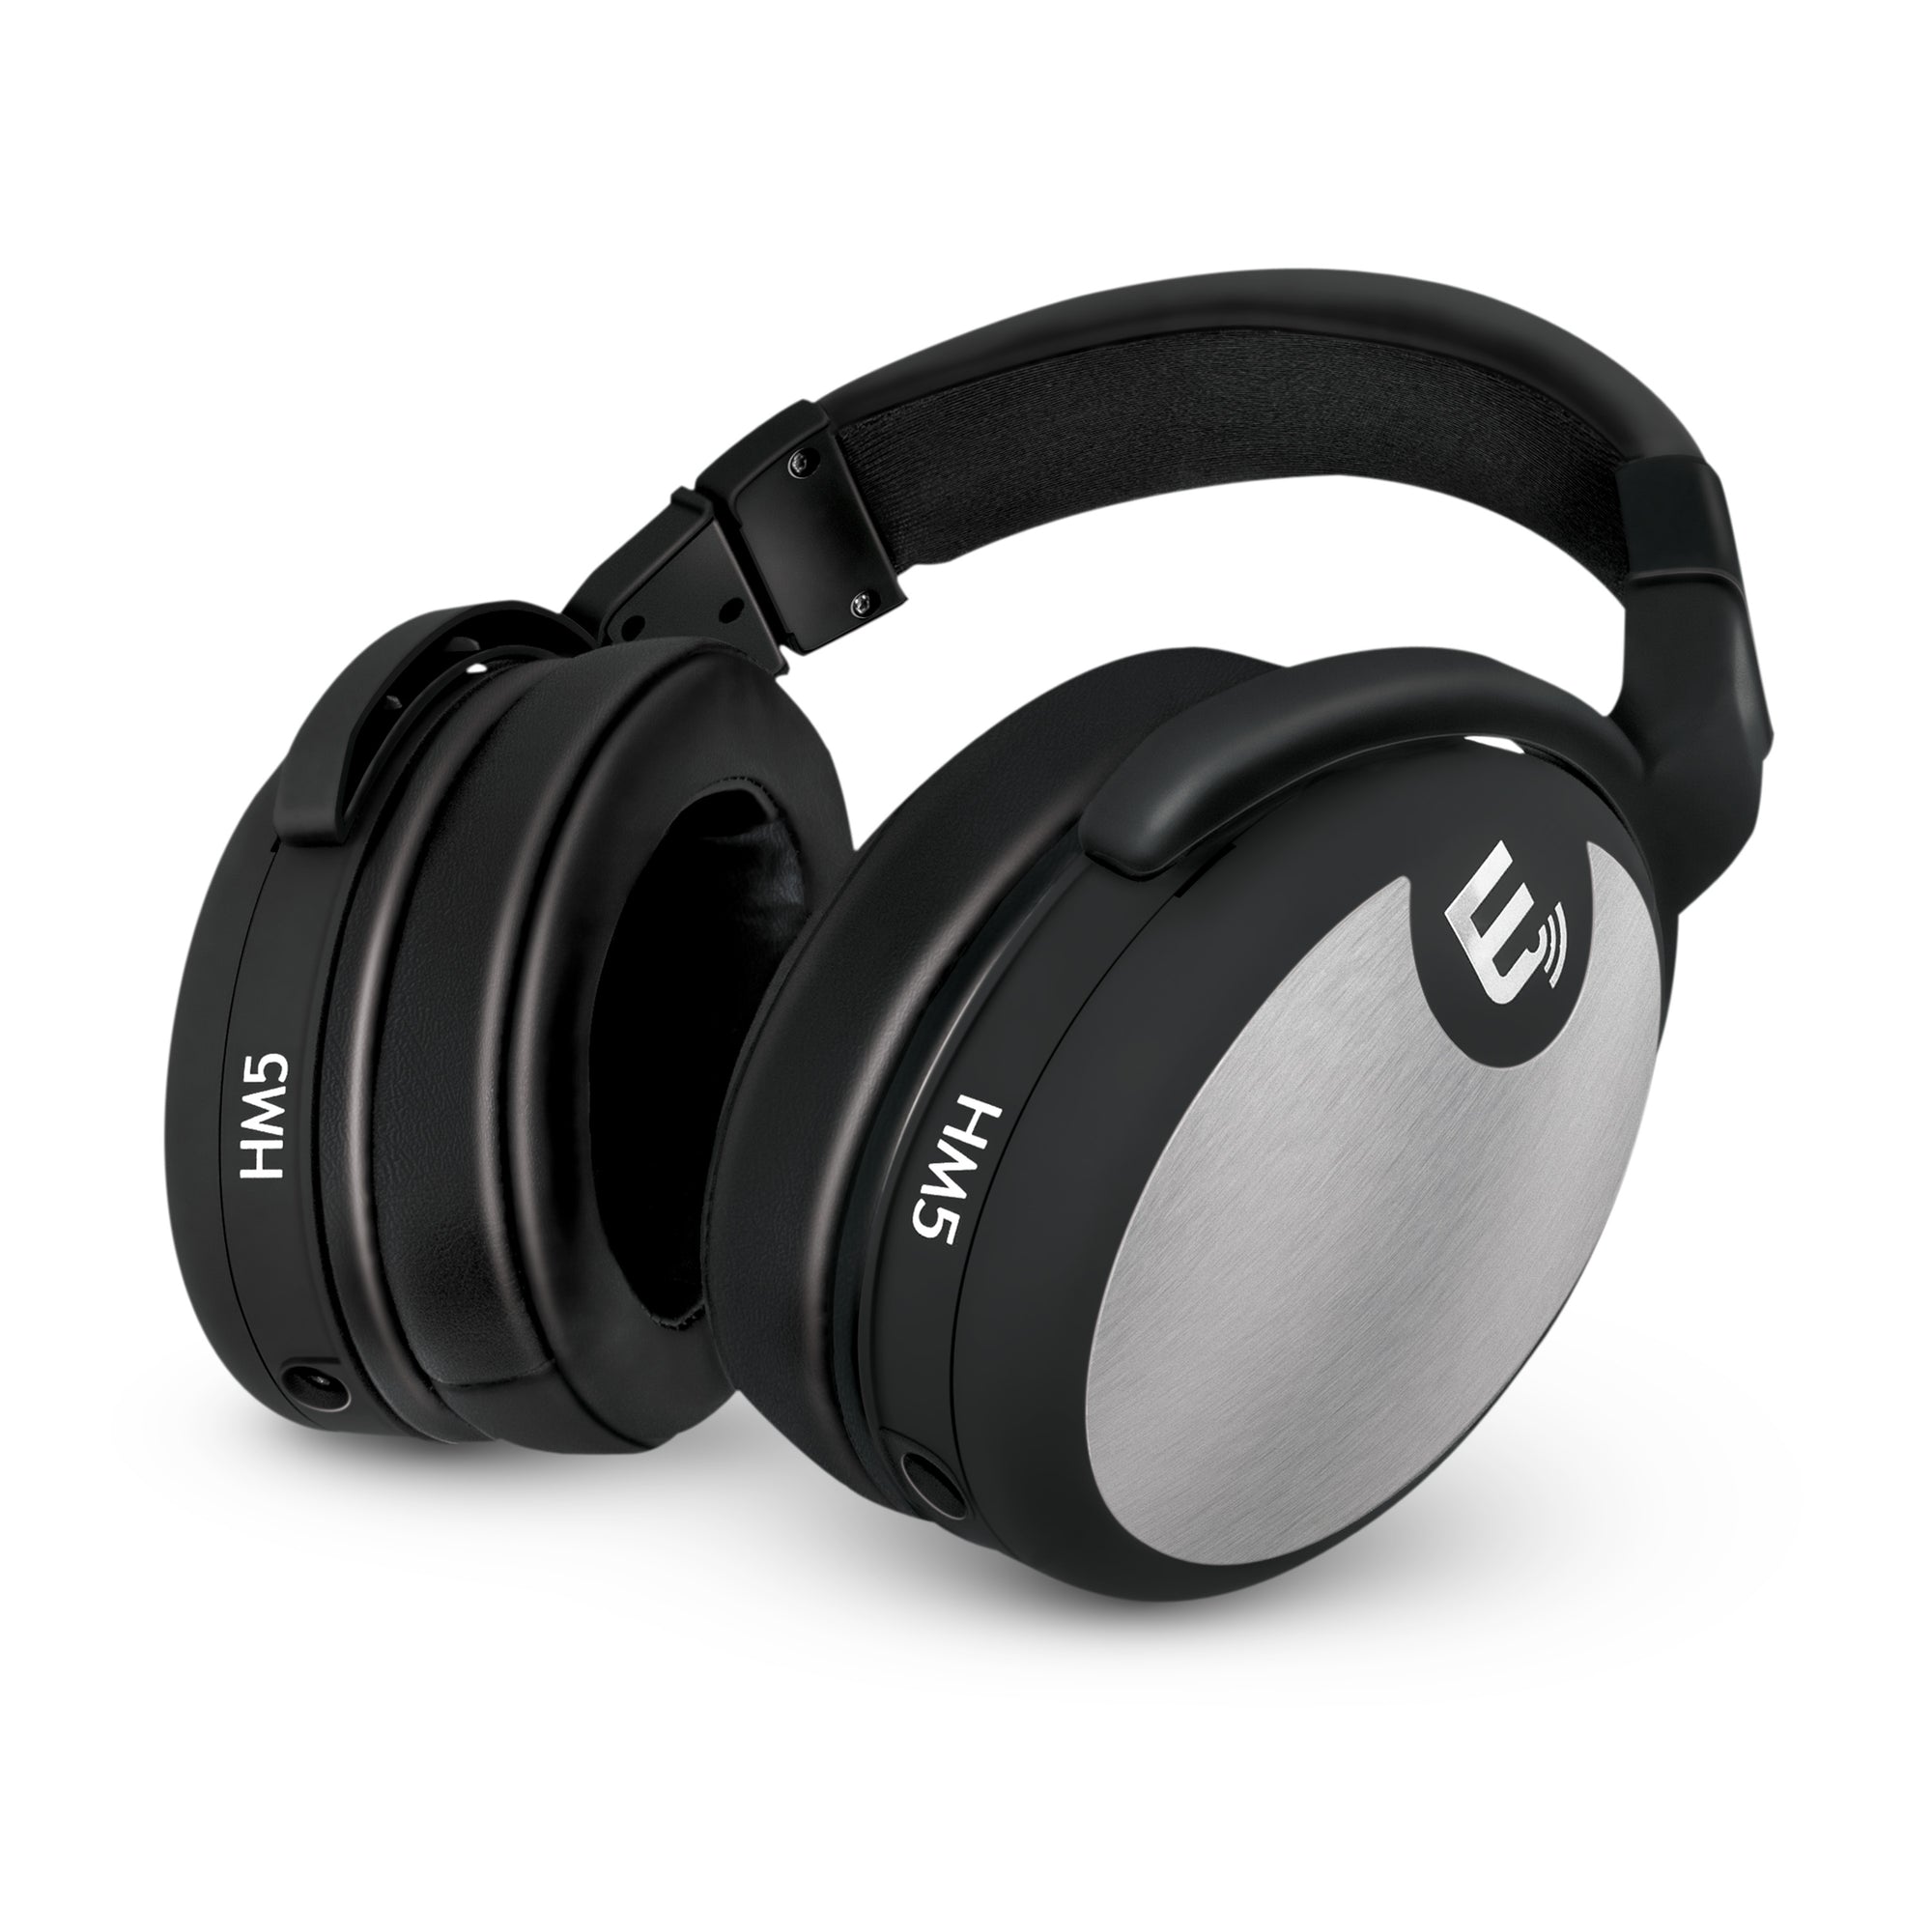 HM5 Studio Monitor Headphones